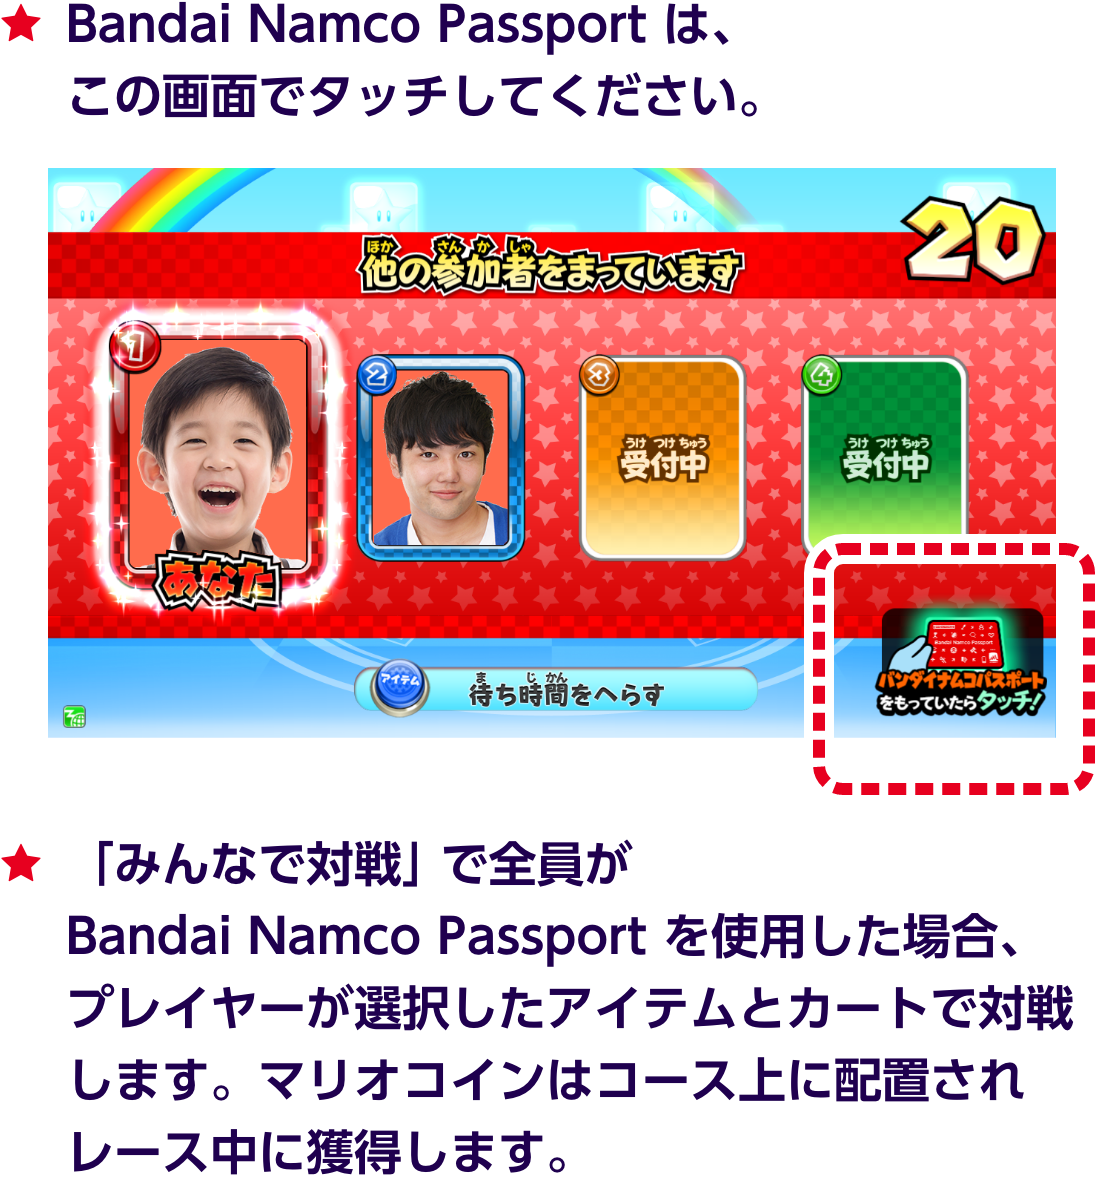 ★Bandai Namco Passport は、この画面でタッチしてください。★「みんなで対戦」で全員がBandai Namco Passport を使用した場合、プレイヤーが選択したアイテムとカートで対戦します。マリオコインはコース上に配置されレース中に獲得します。